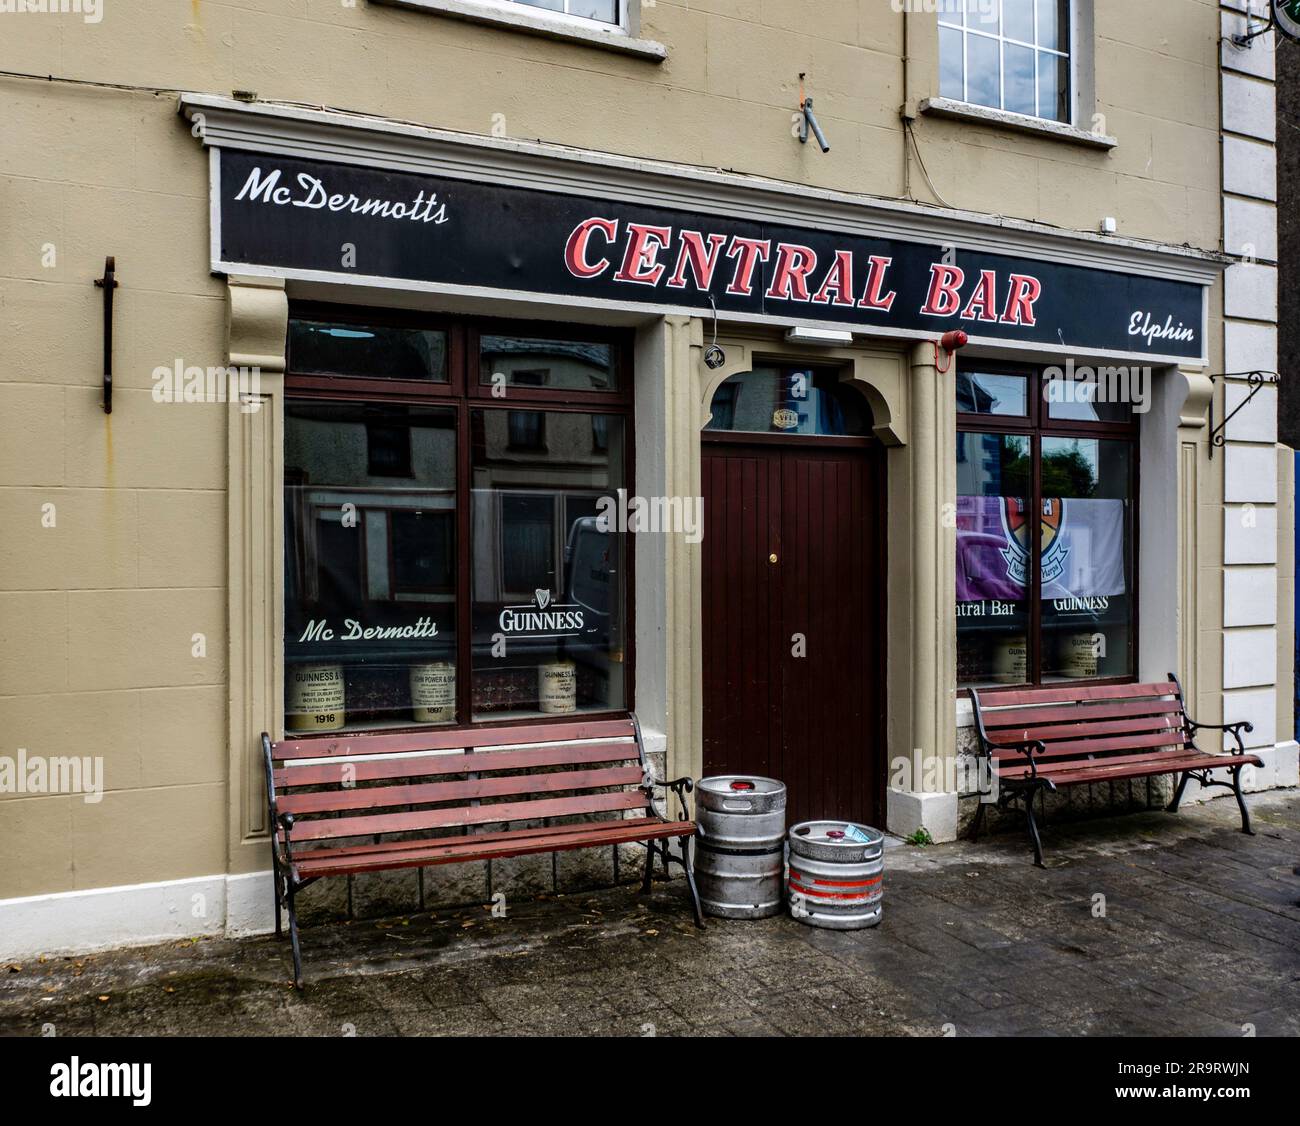 McDermotts Central Bar à Elphin, comté de Roscommon, Irlande. Pub local avec musique live. Banque D'Images